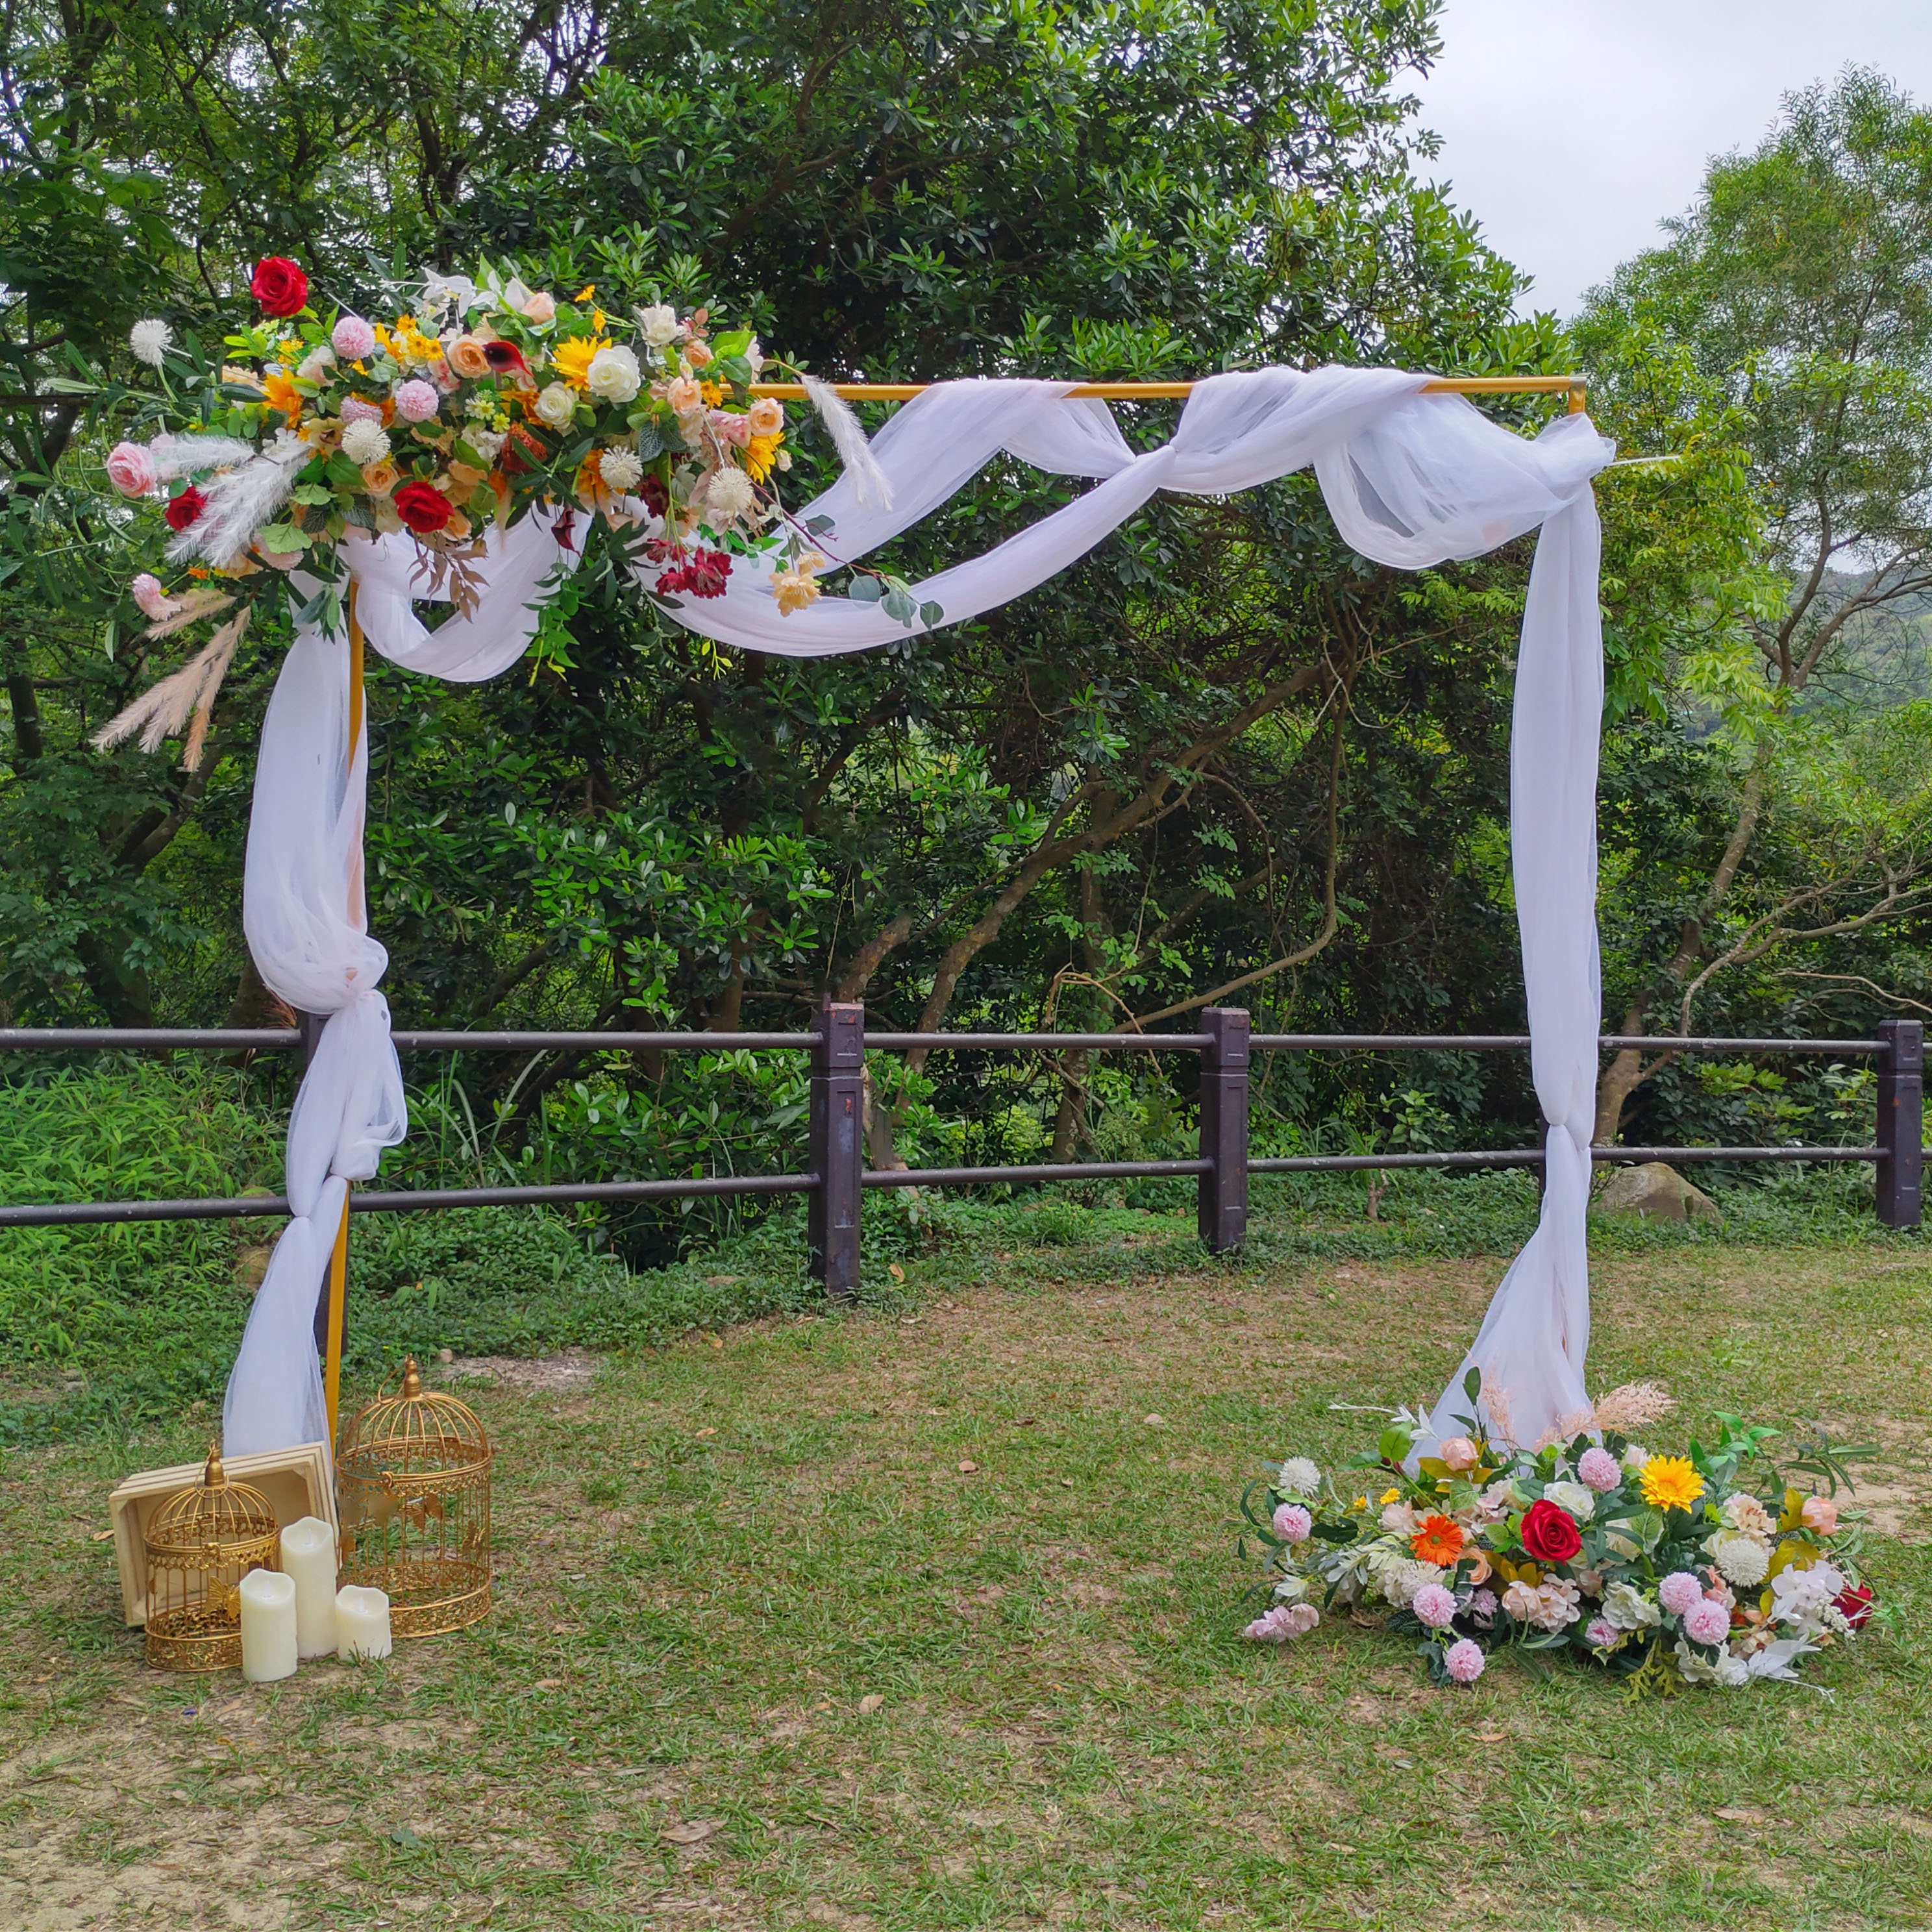 鮮花拱門是婚禮佈置花藝設計最常見，可選花拱門出租更環保